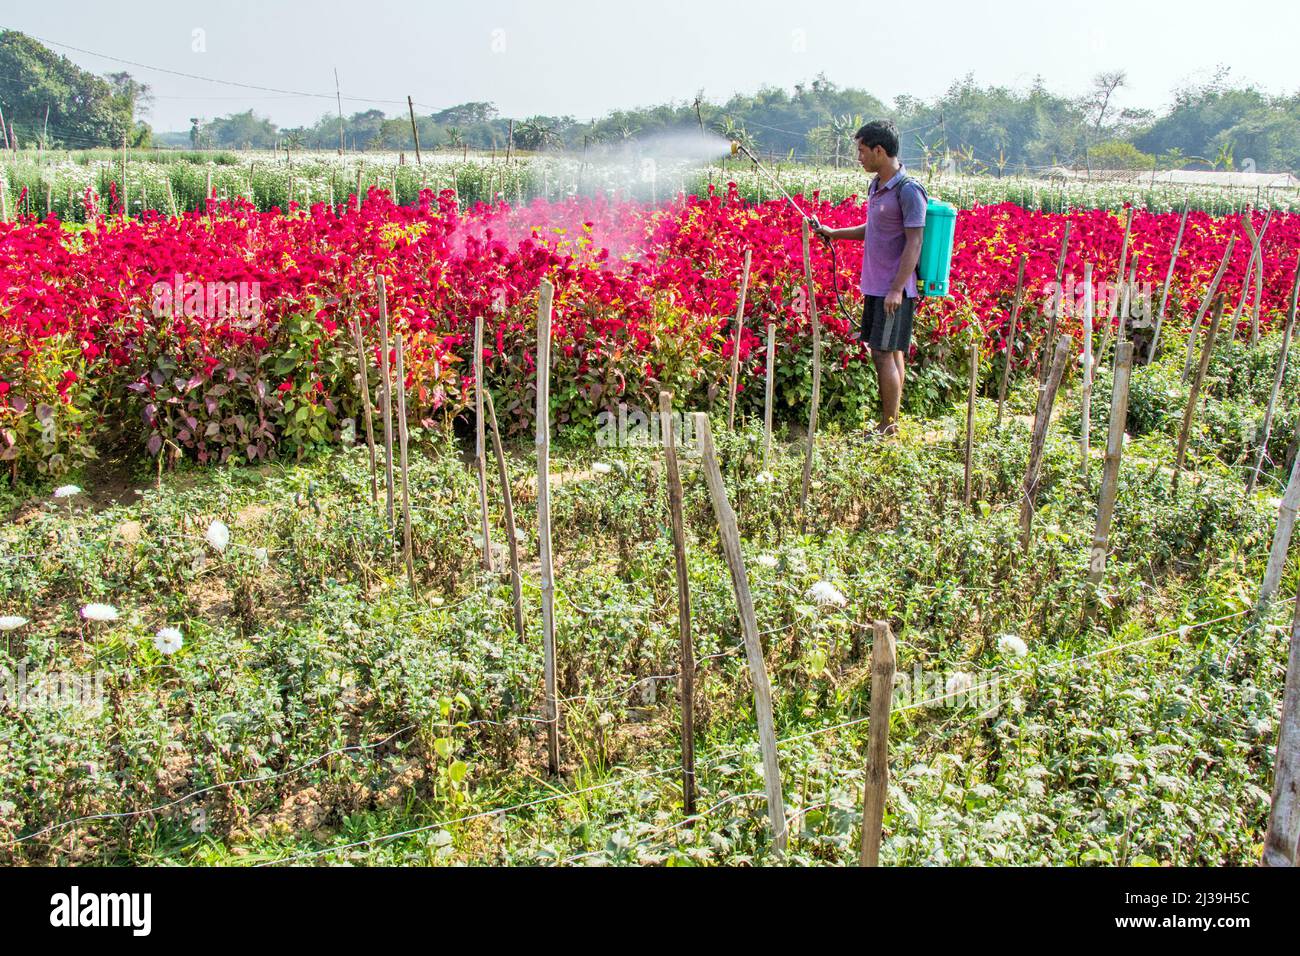 Photo d'un champ de fleurs à Medinipur. Un agriculteur pulvérise des insecticides pour protéger le champ floral des insectes. Banque D'Images